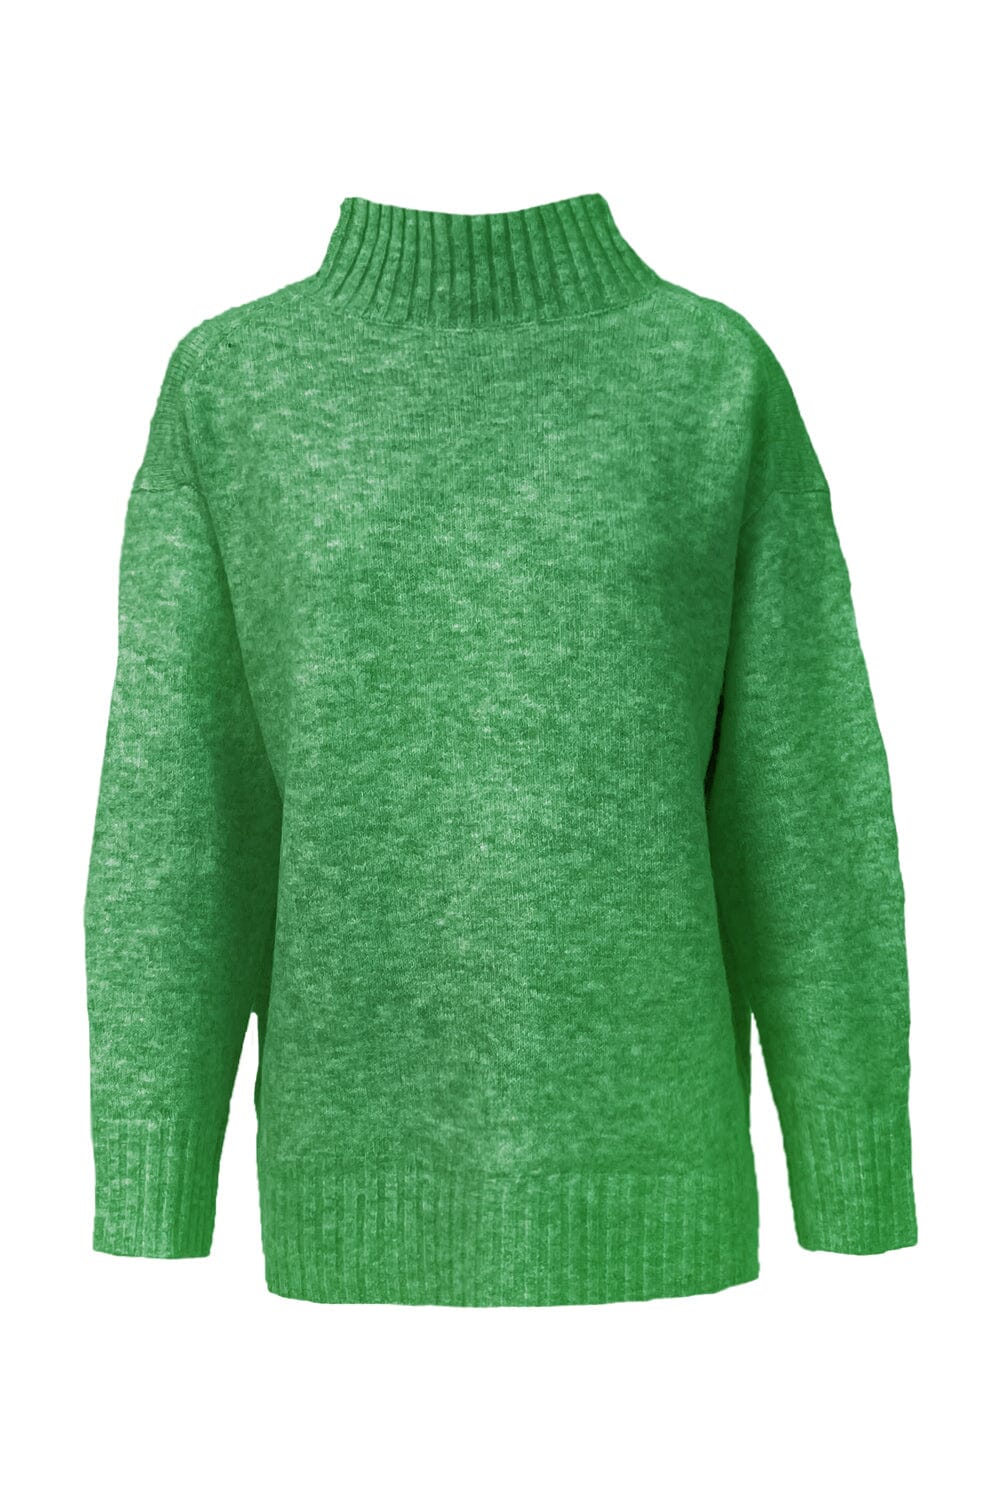 Aspen Jumper Green- Pre Order Knitwear